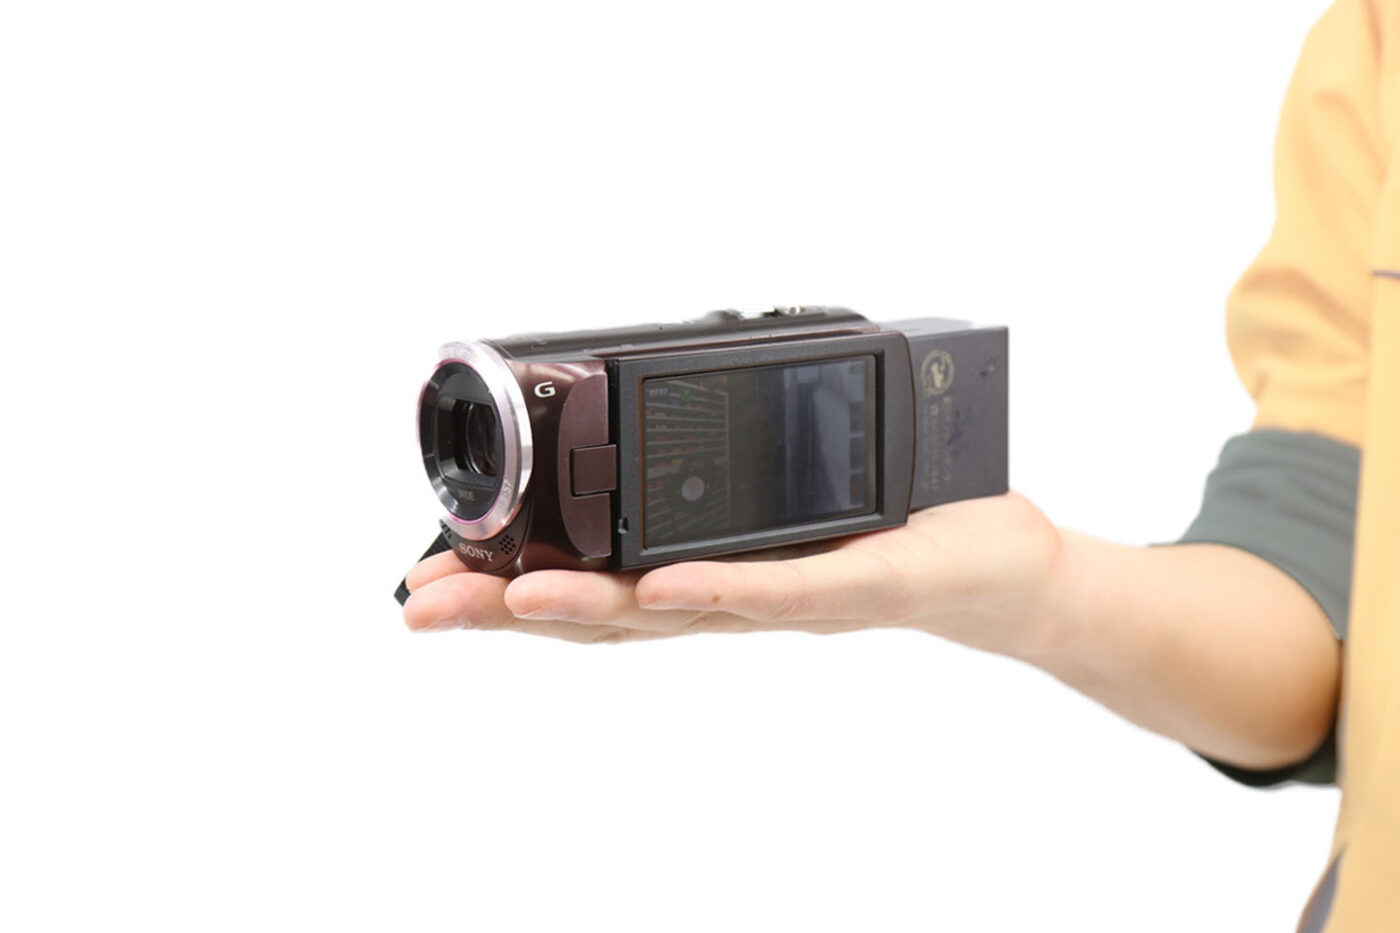 価格交渉OK送料無料 みかんショップSONY デジタルHDビデオカメラレコーダー HDR-CX390 プレミアムホワイト HDR-CX390-W 